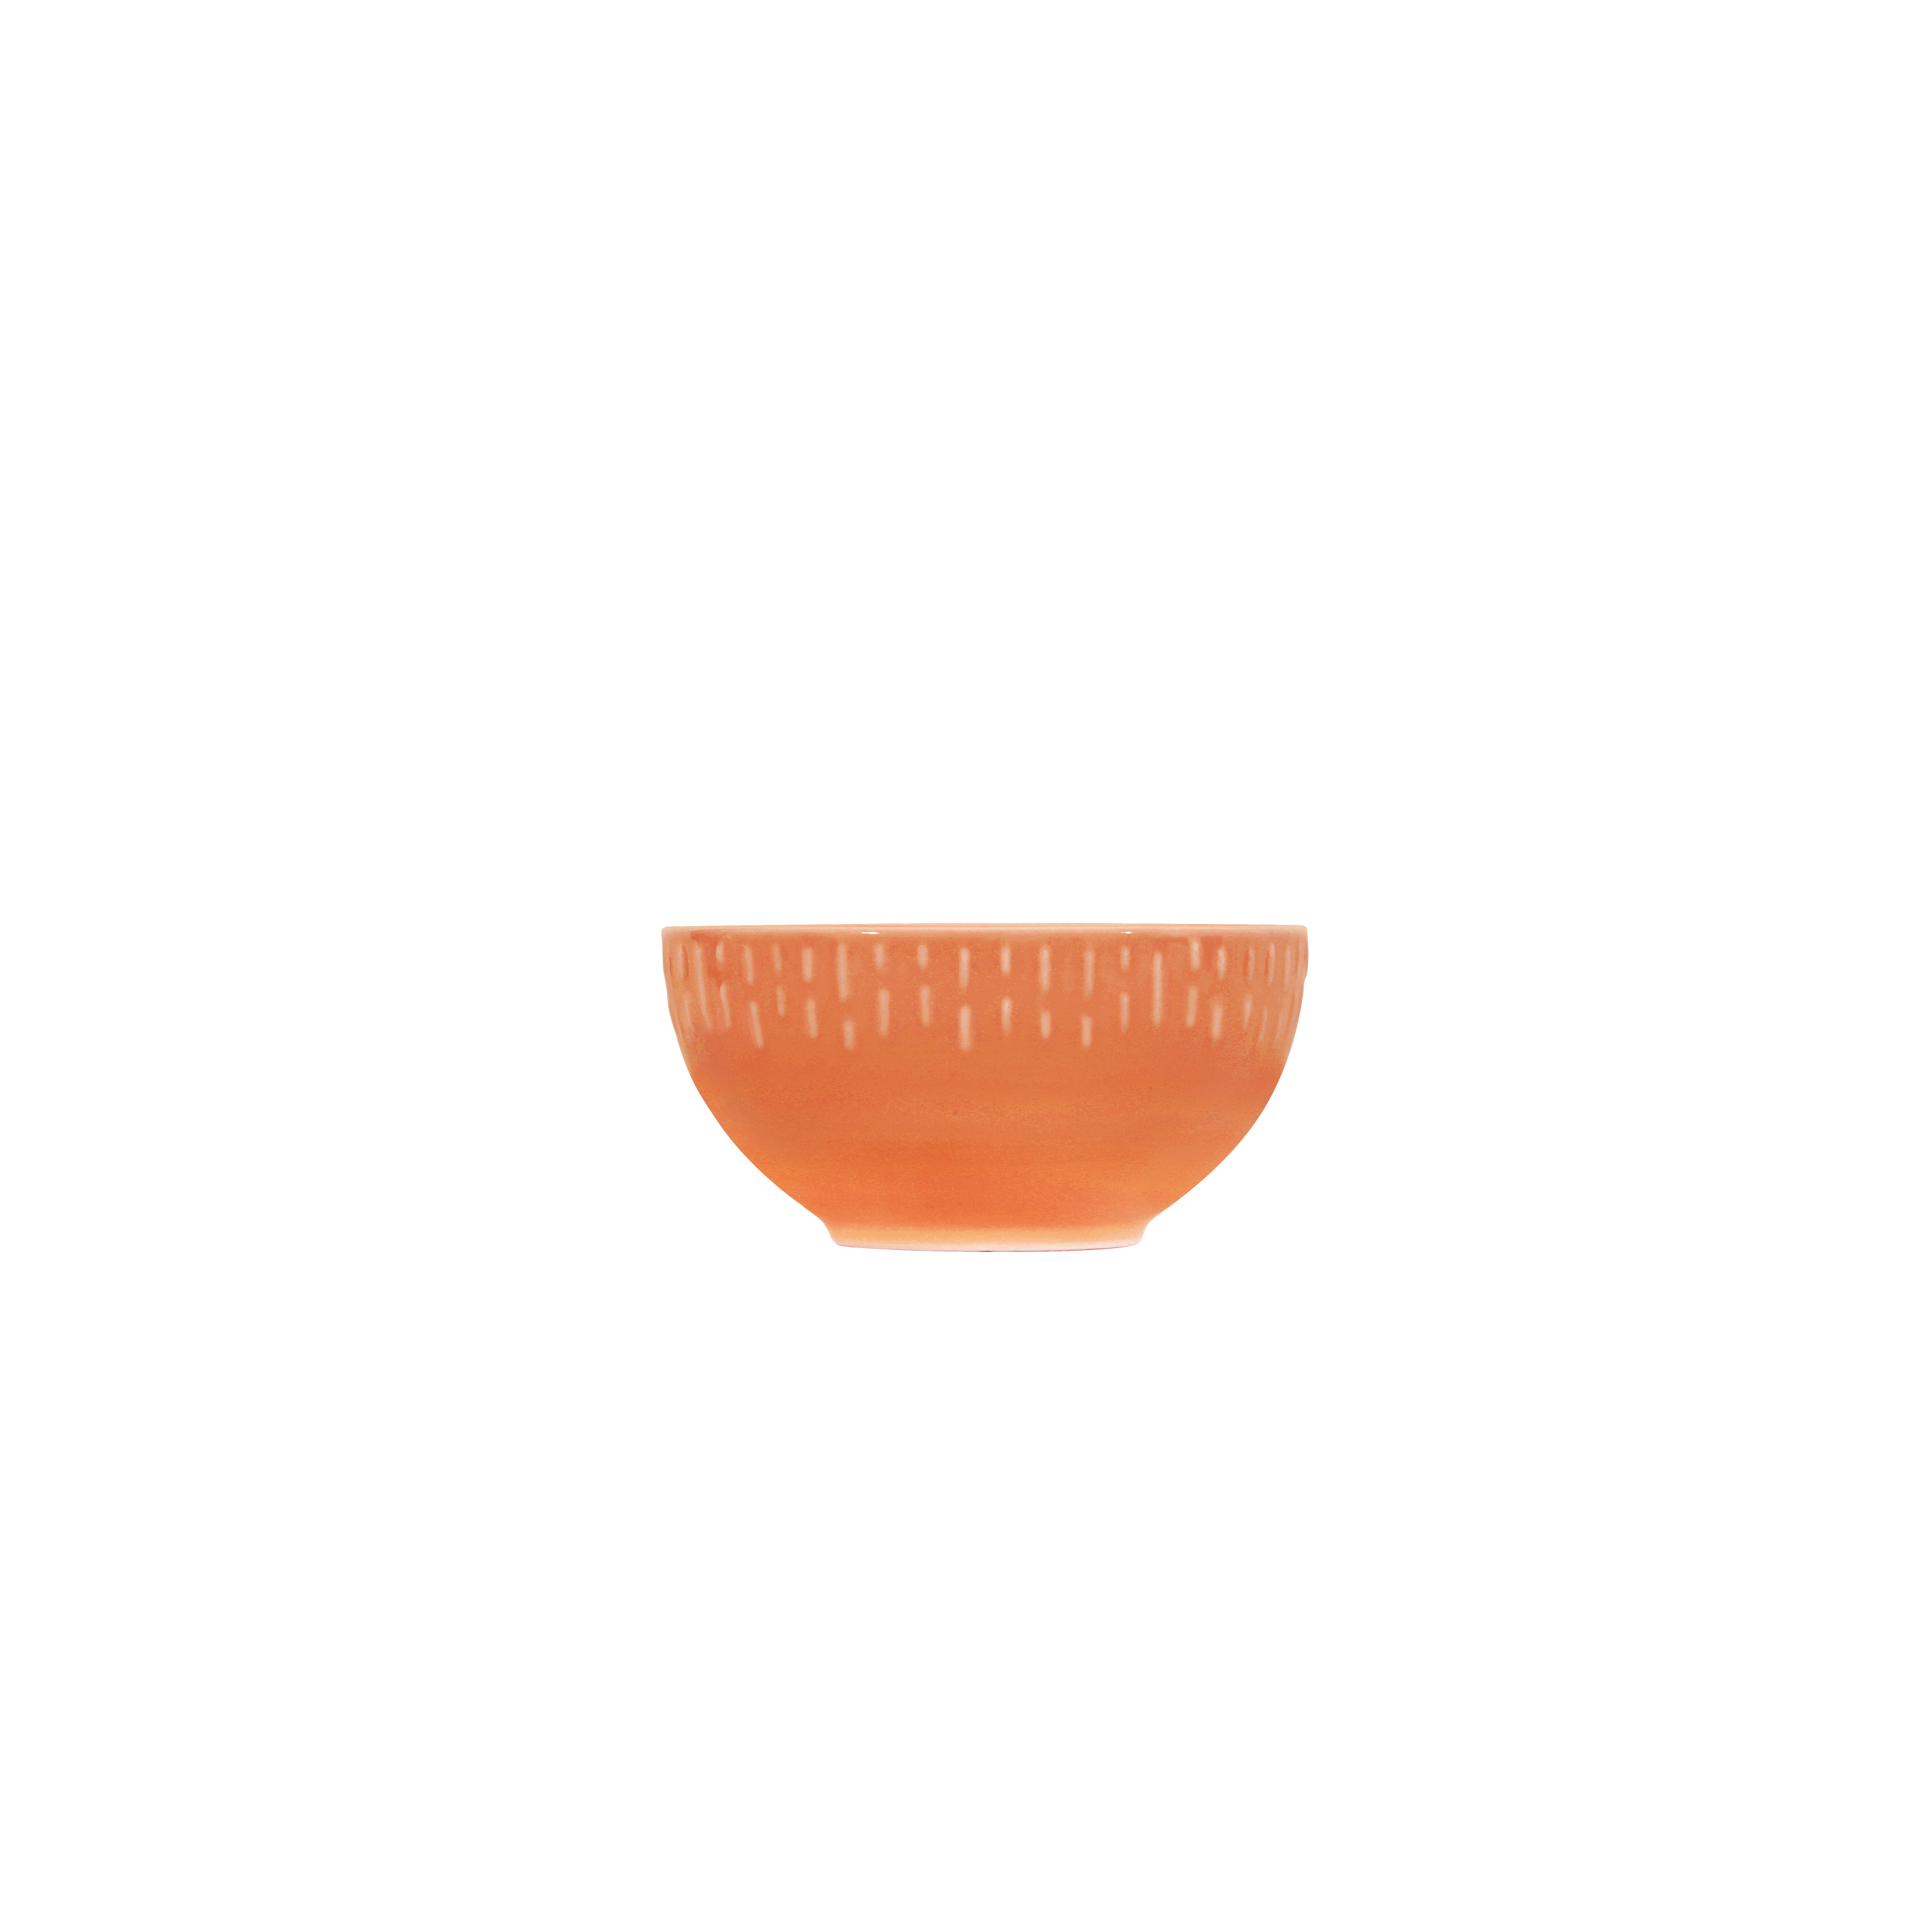 Aida - Life in Colour - Confetti - Apricot skål m/relief porcelæn (13327)